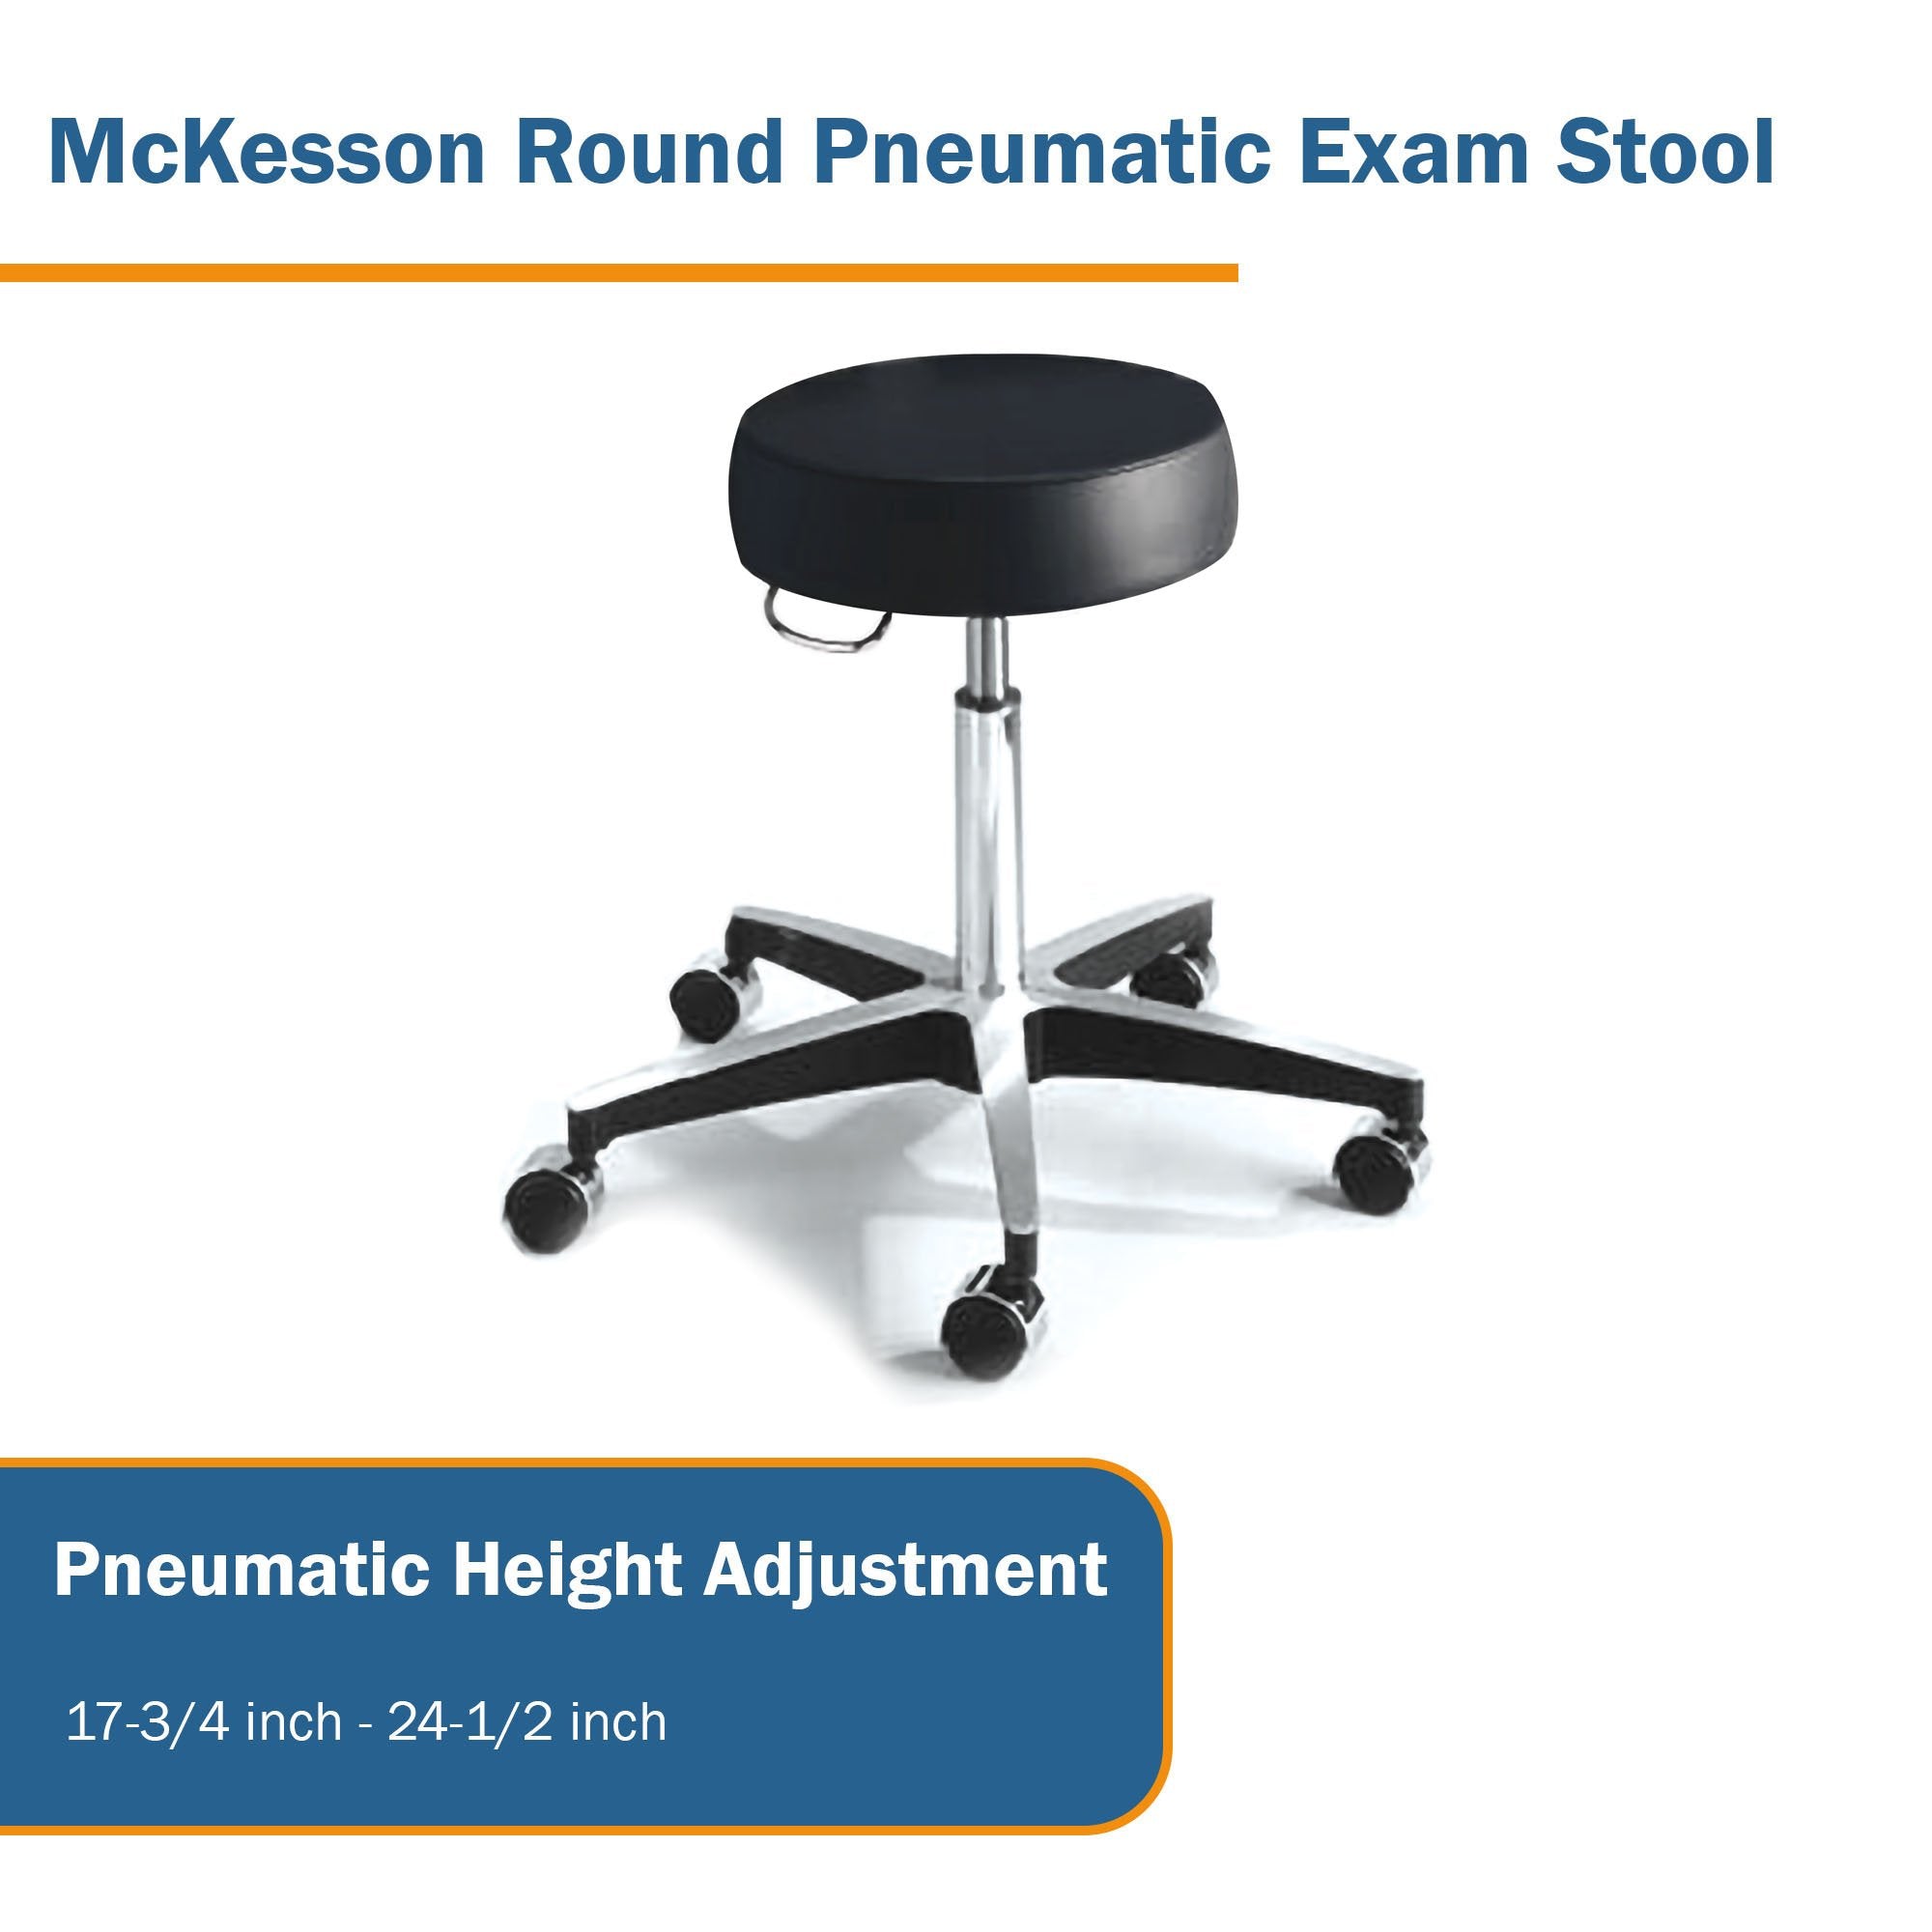 McKesson Round Pneumatic Exam Stool, Black